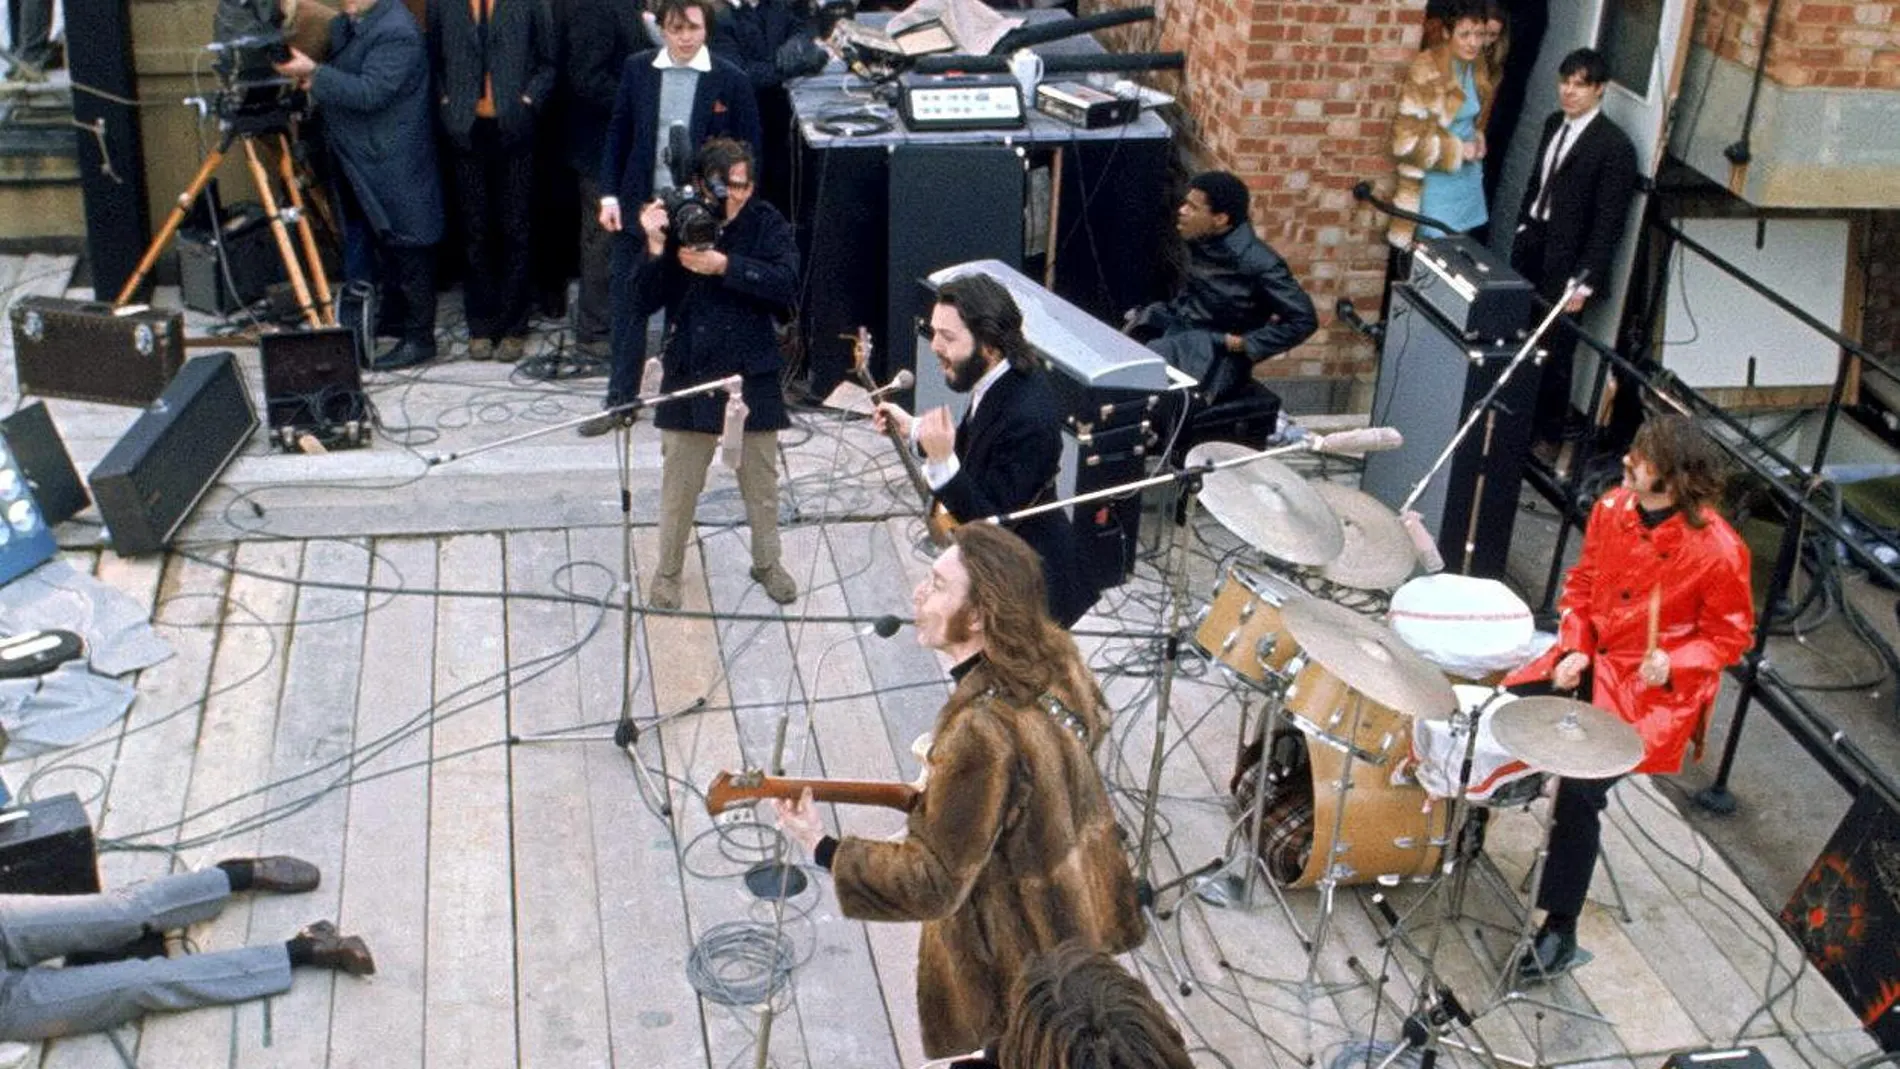 The Beatles presentando en directo el disco "Let it be", en la terraza de un edificio de Liverpoll / Foto: Efe